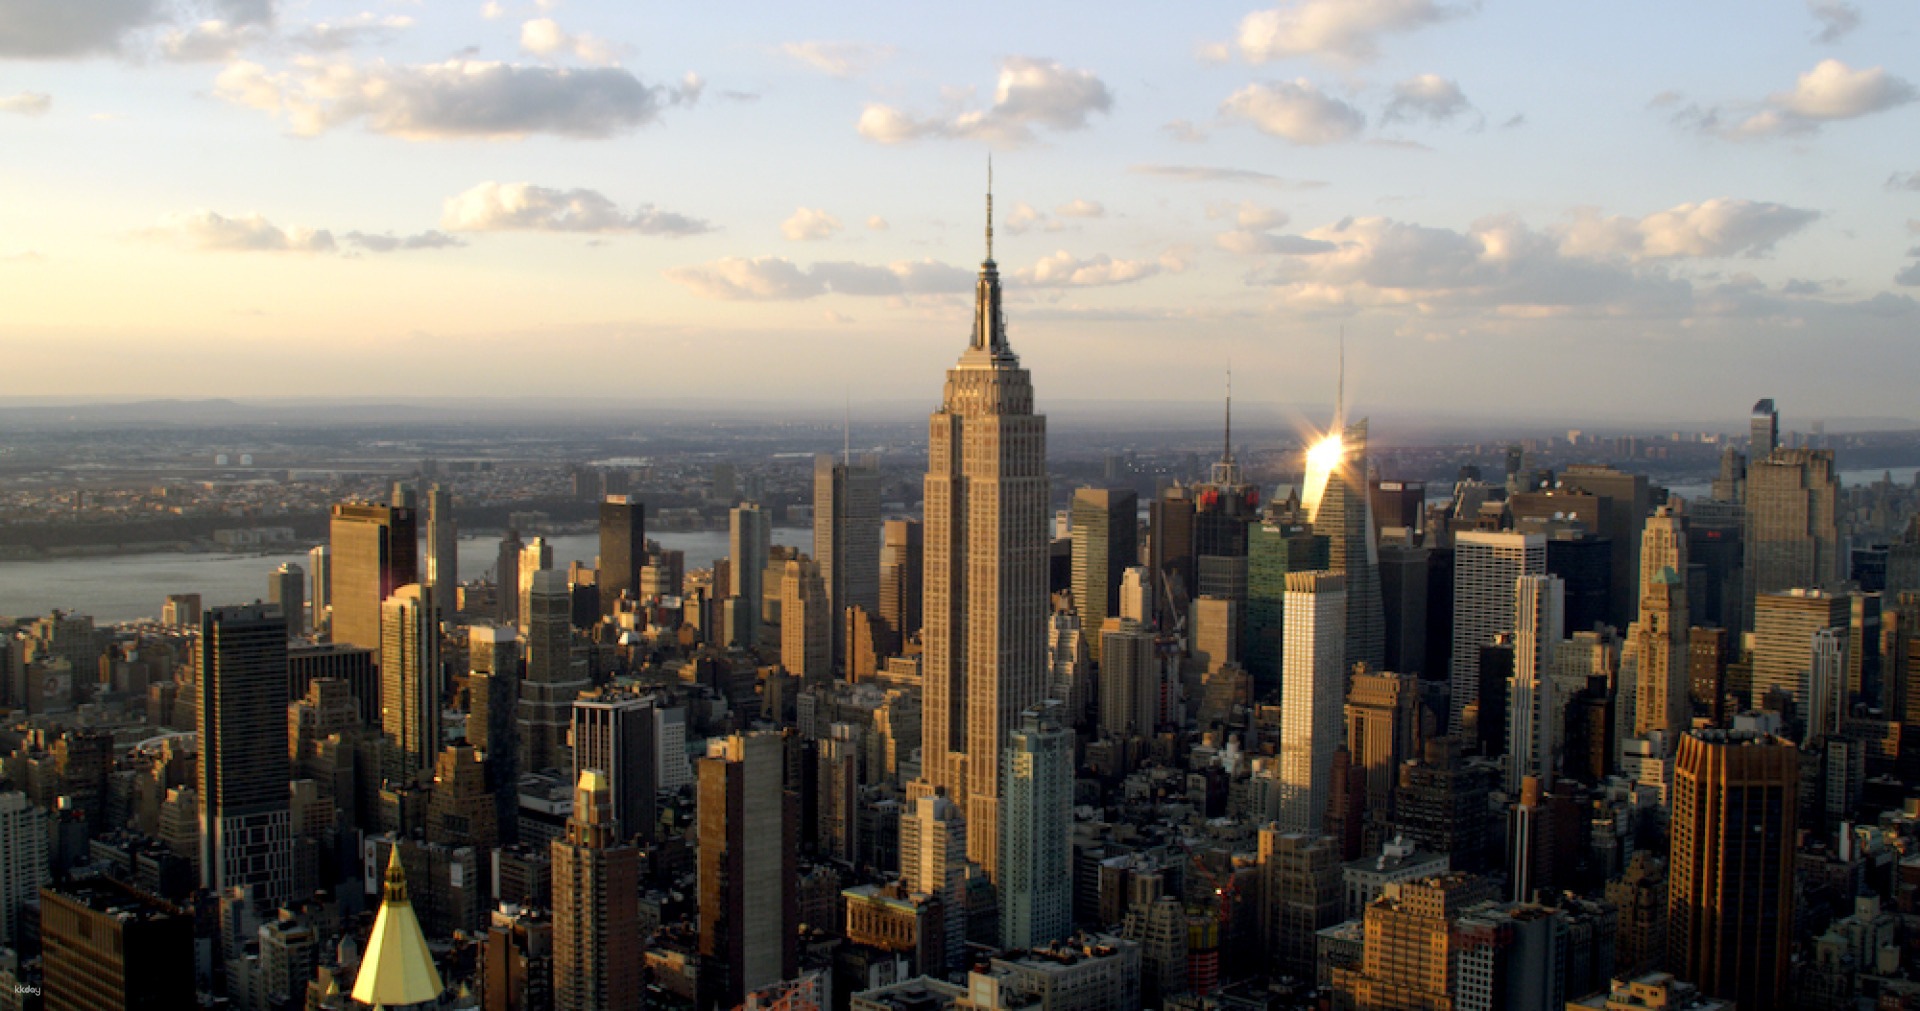 美國-紐約帝國大廈86樓景觀台門票| 一般門票/快速通關